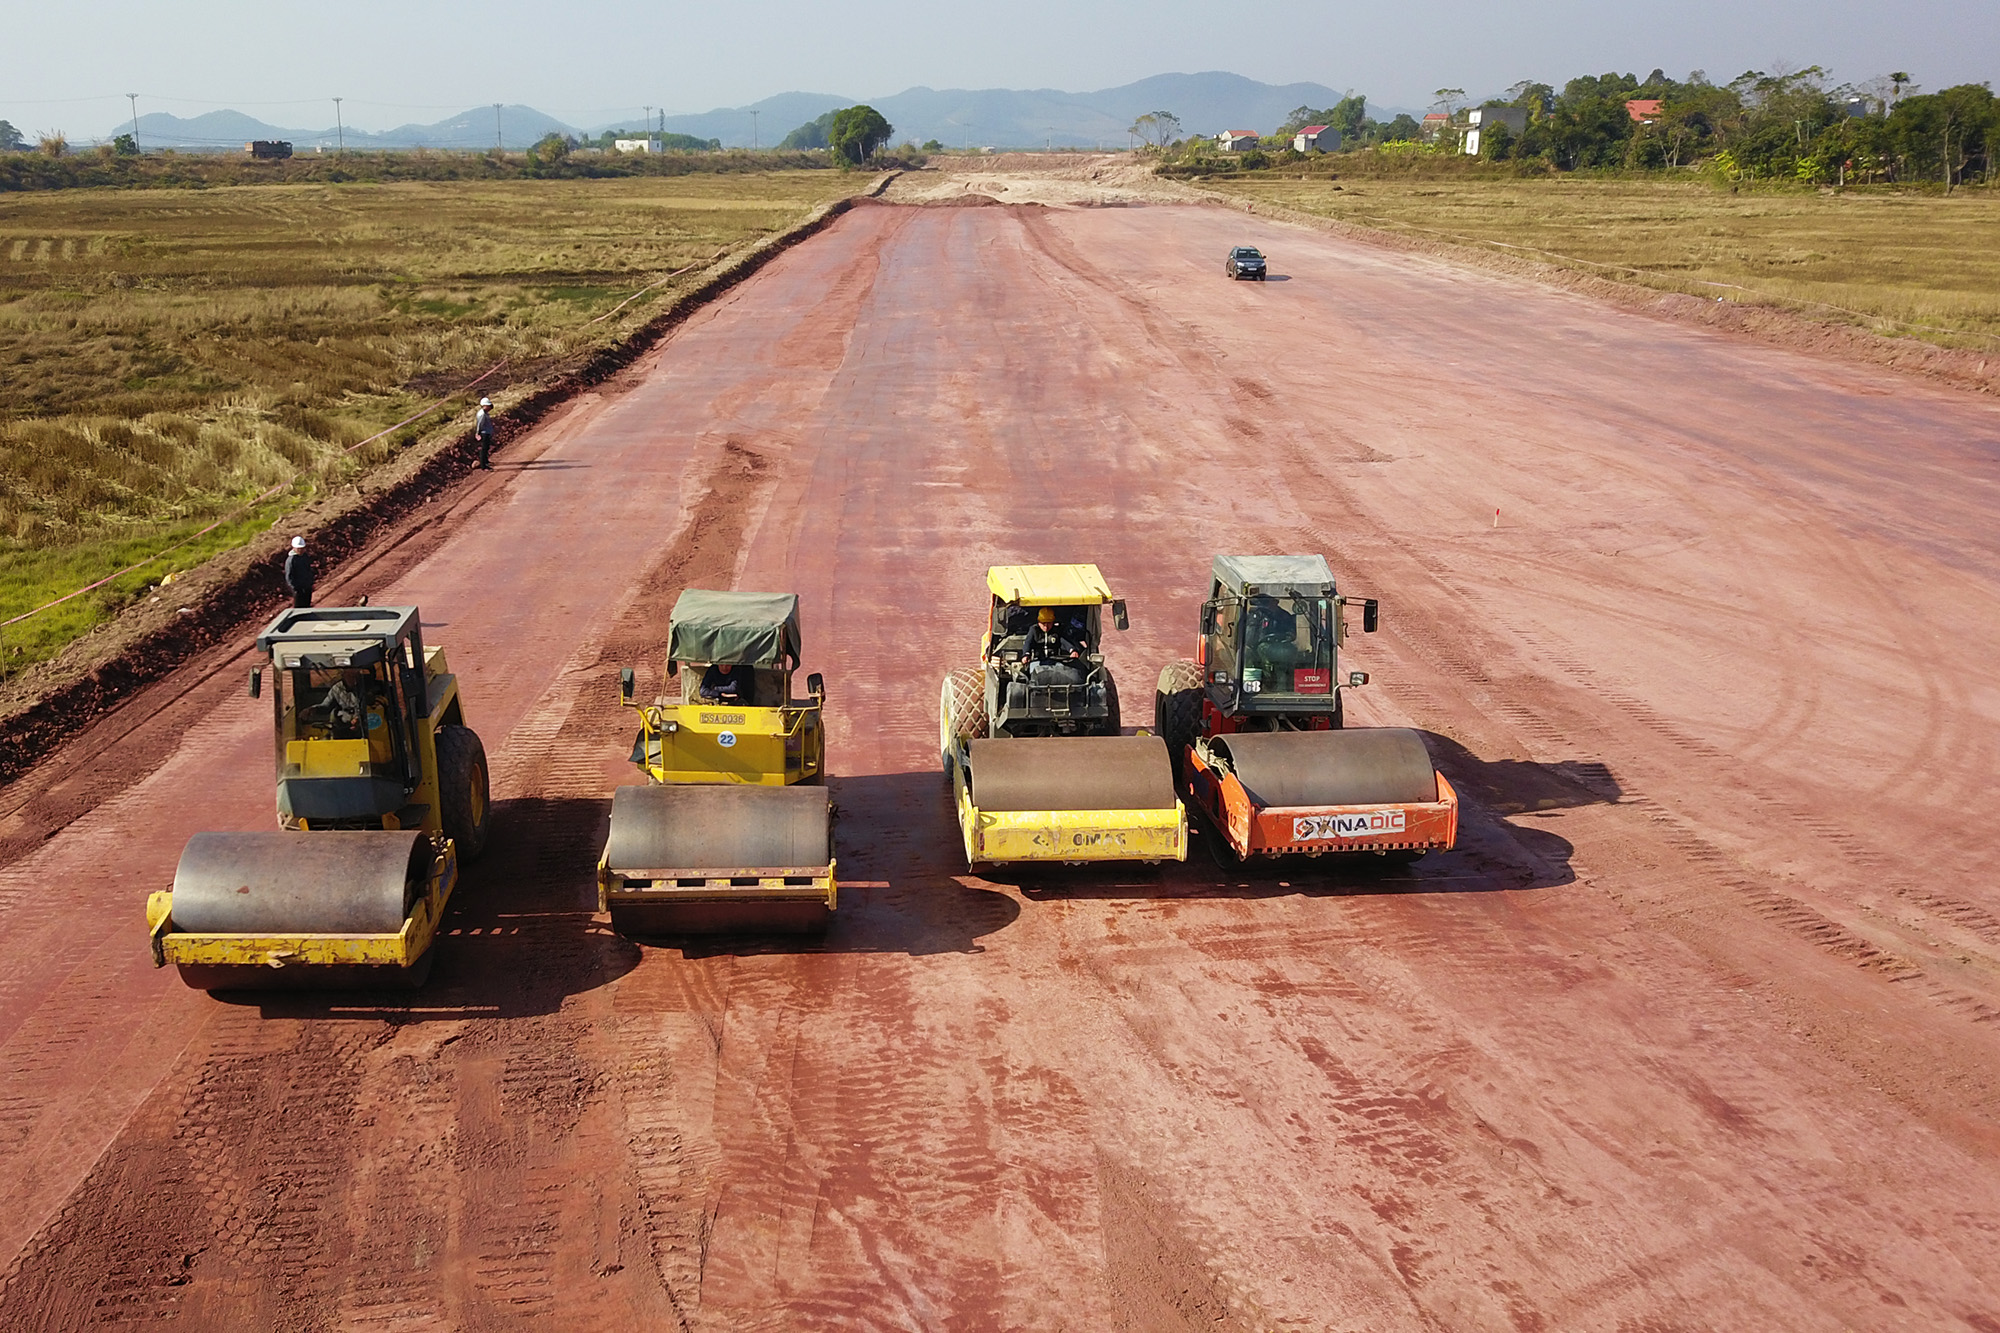 Thi công nền đường K95 cao tốc Vân Đồn - Móng Cái đoạn qua địa bàn huyện Tiên Yên. Ảnh chụp tháng 12/2019.